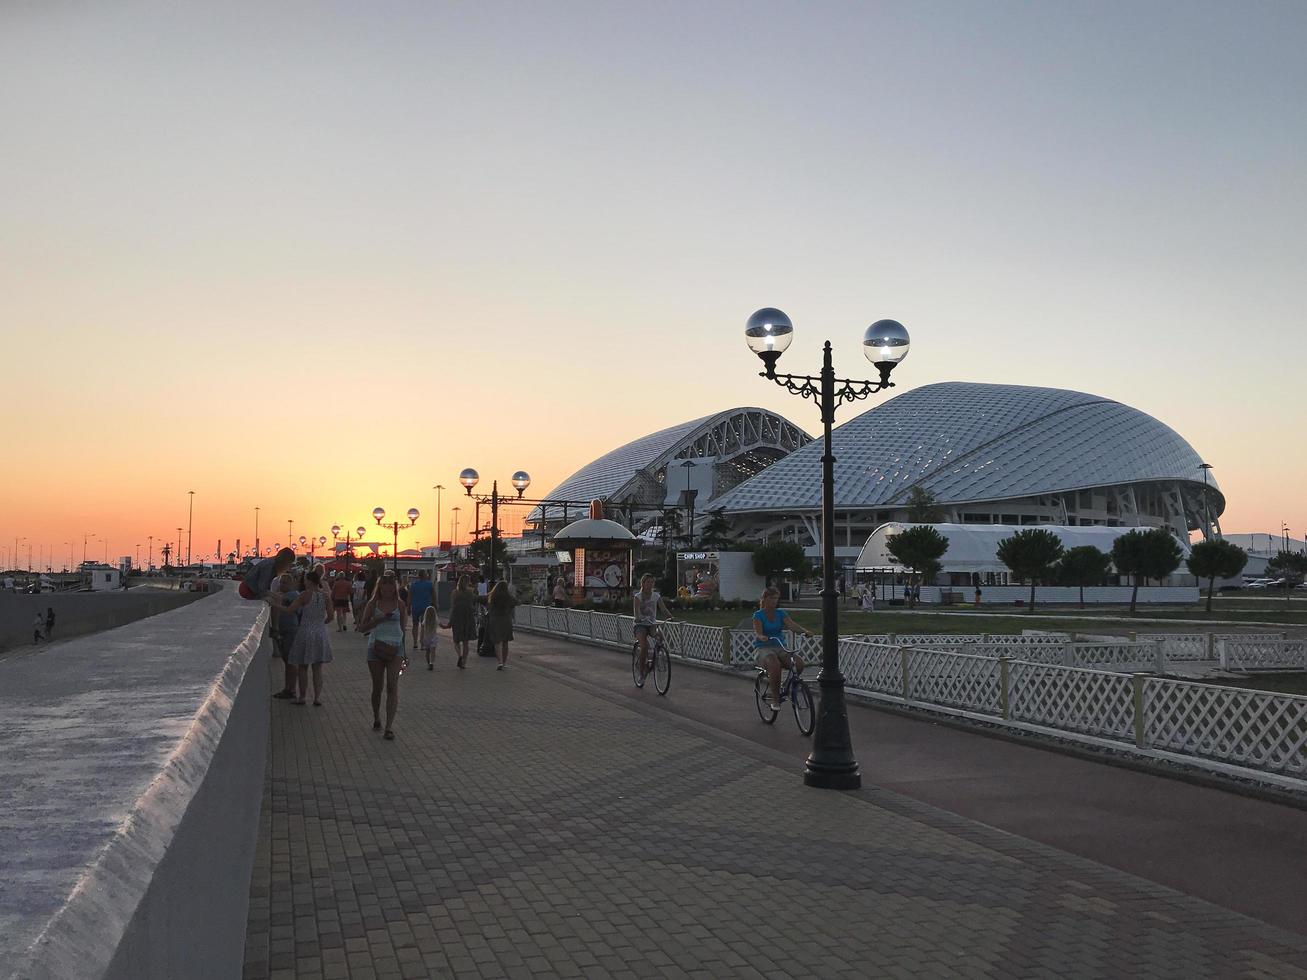 coucher de soleil sur le front de mer de la ville d'adler près du stade fisht, russie, 2019 photo